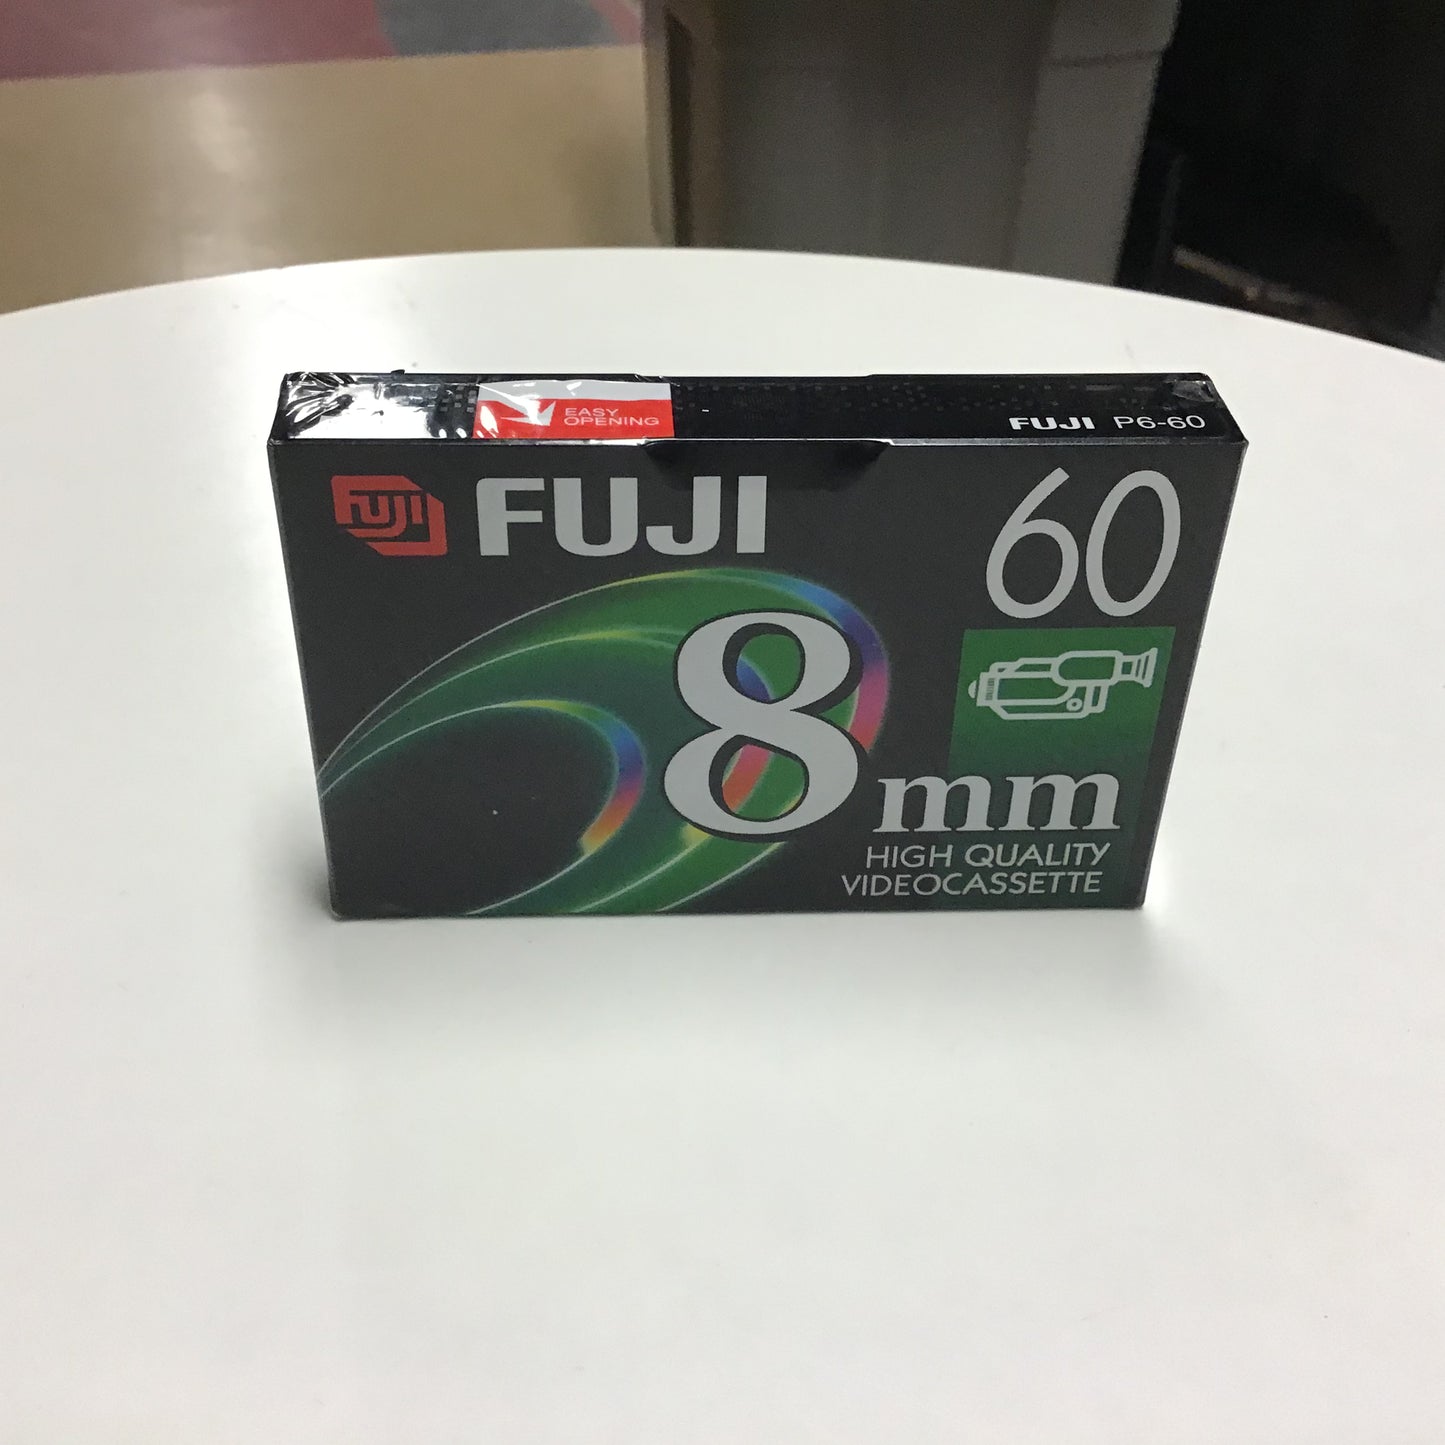 FUJI 8mm Video Cassette